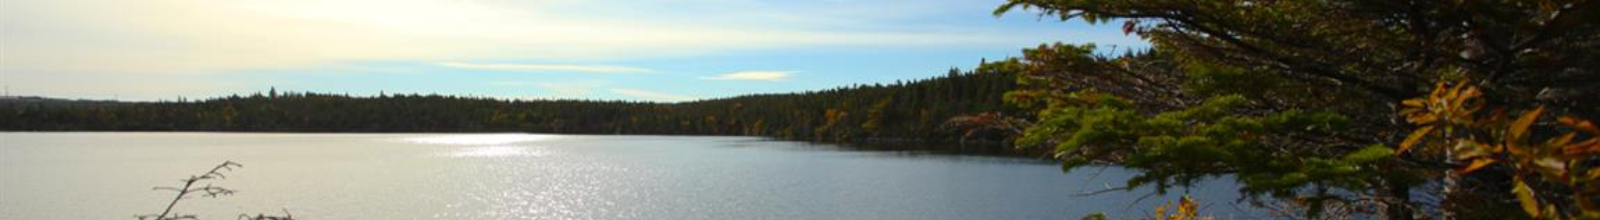 lake in fall